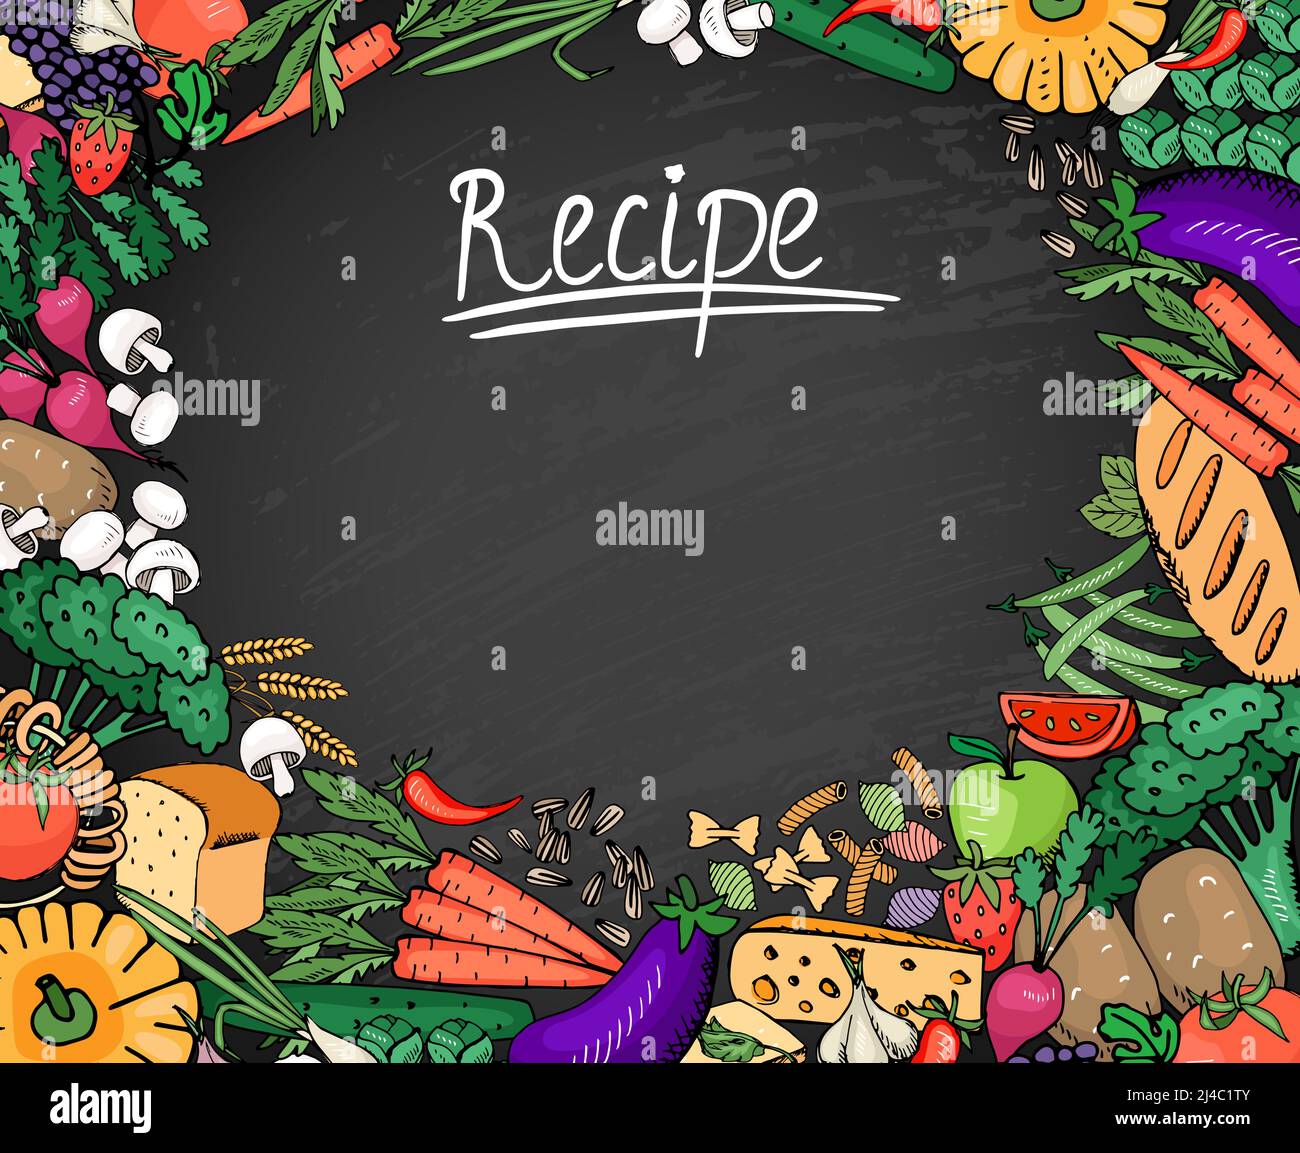 Farbige Lebensmittel Rezept Zutaten wie Gemüse Brot und Gewürze Hintergrund auf schwarzem Kreidetafel Stock Vektor